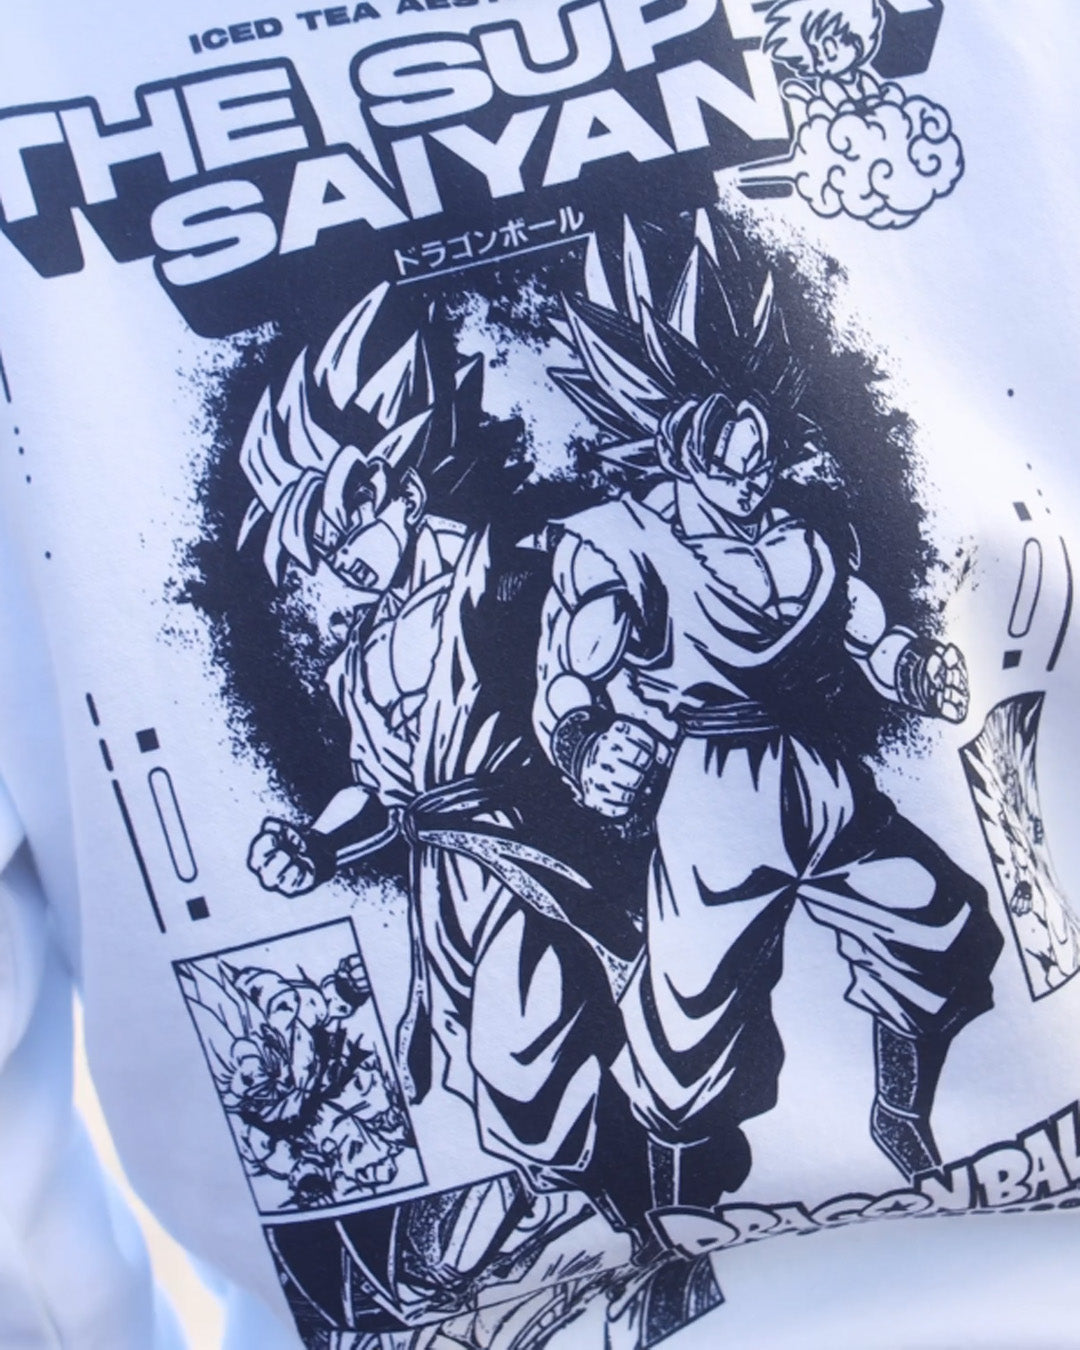 Super Saiyans Sweatshirt